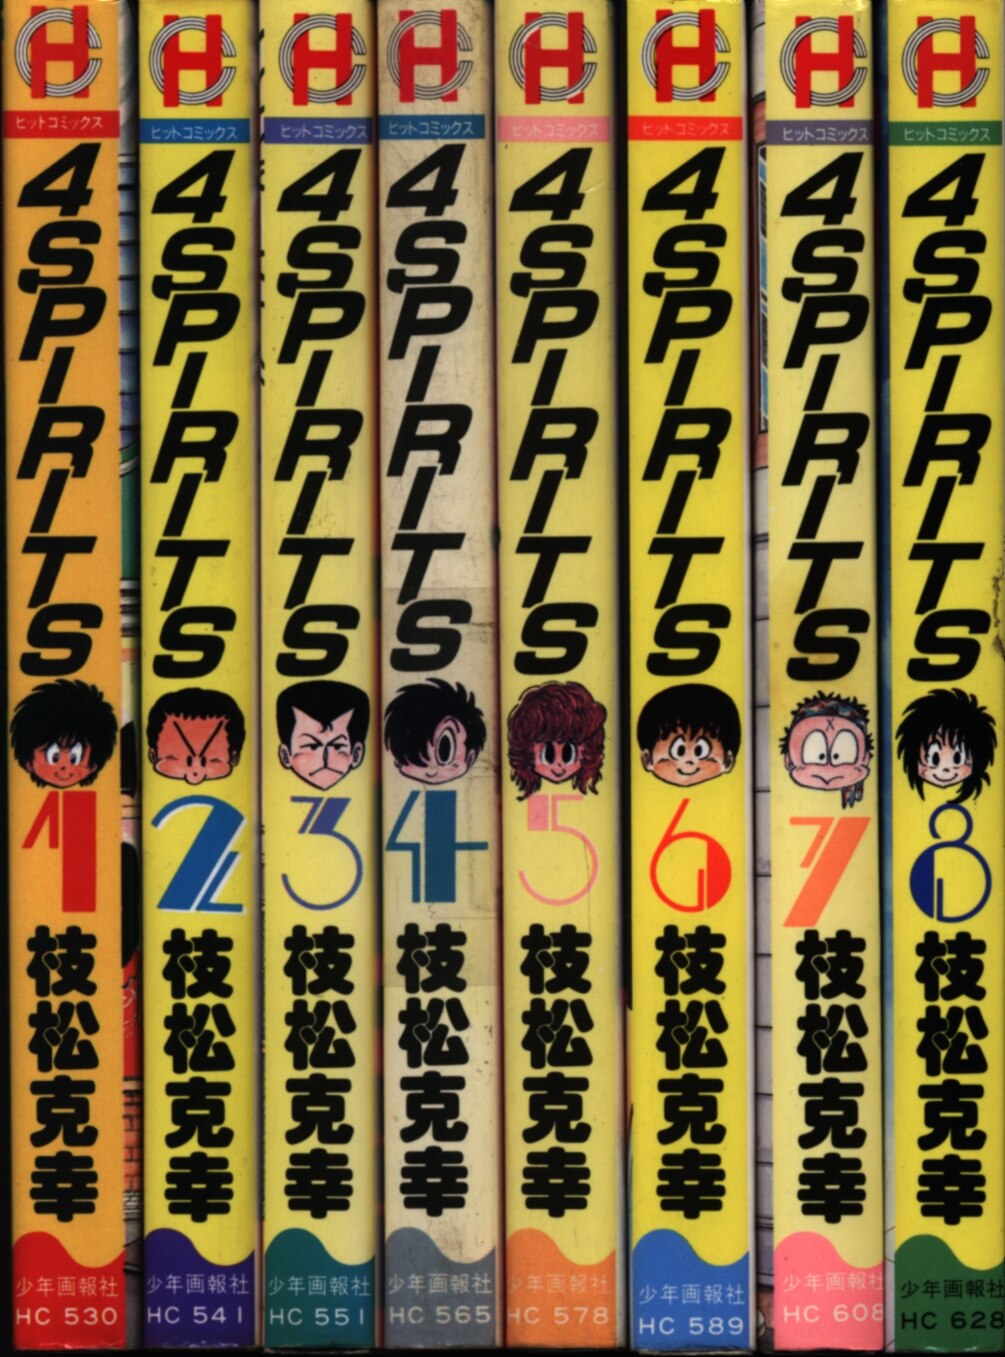 少年画報社 ヒットコミックス 枝松克幸 4SPIRITS 全8巻 セット